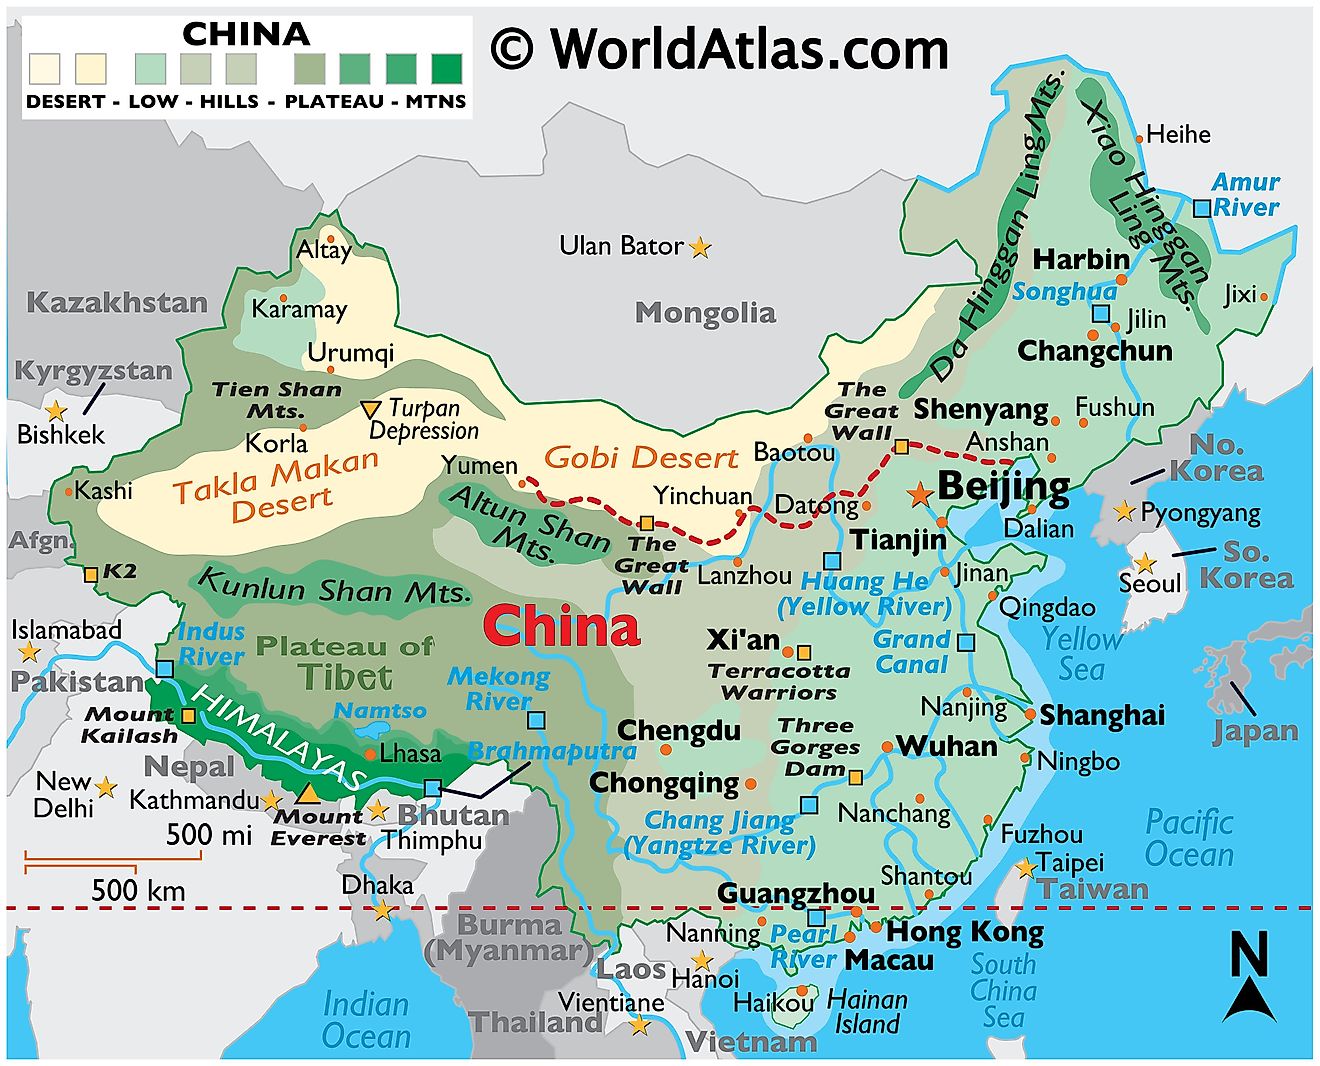 Mapa Físico de China mostrando las fronteras internacionales, relieve, cadenas montañosas, desiertos como el Gobi y Takla Makan, ciudades importantes, islas, etc.